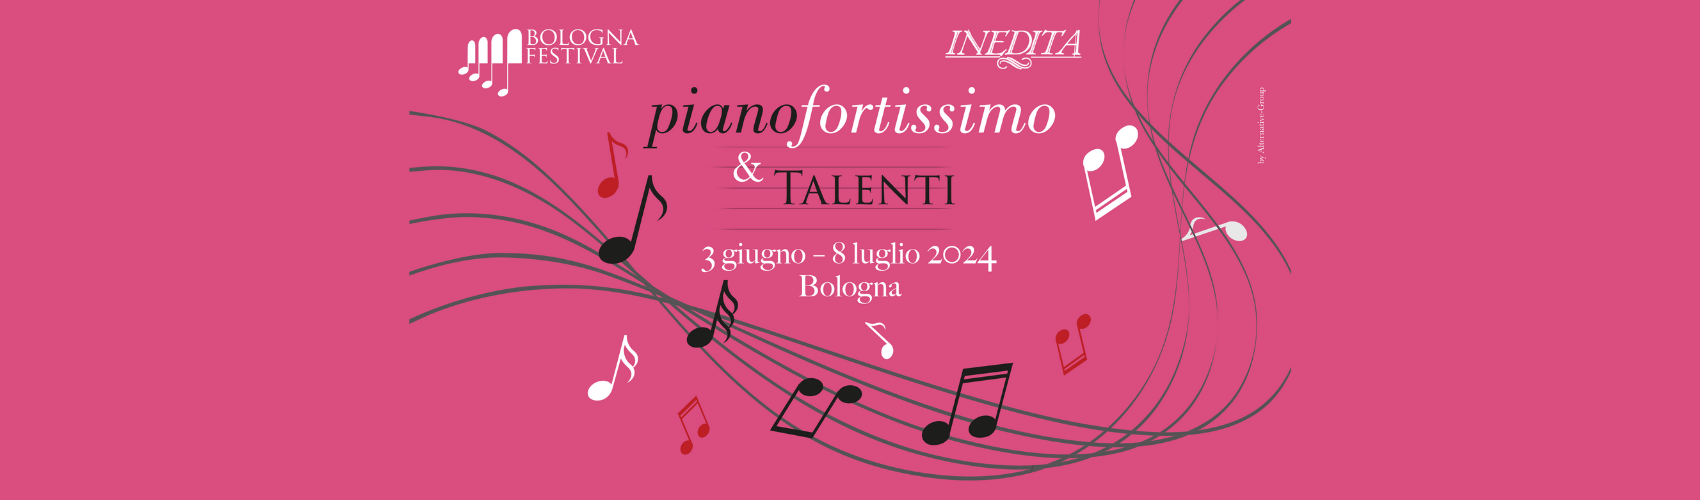 Pianofortissimo & Talenti